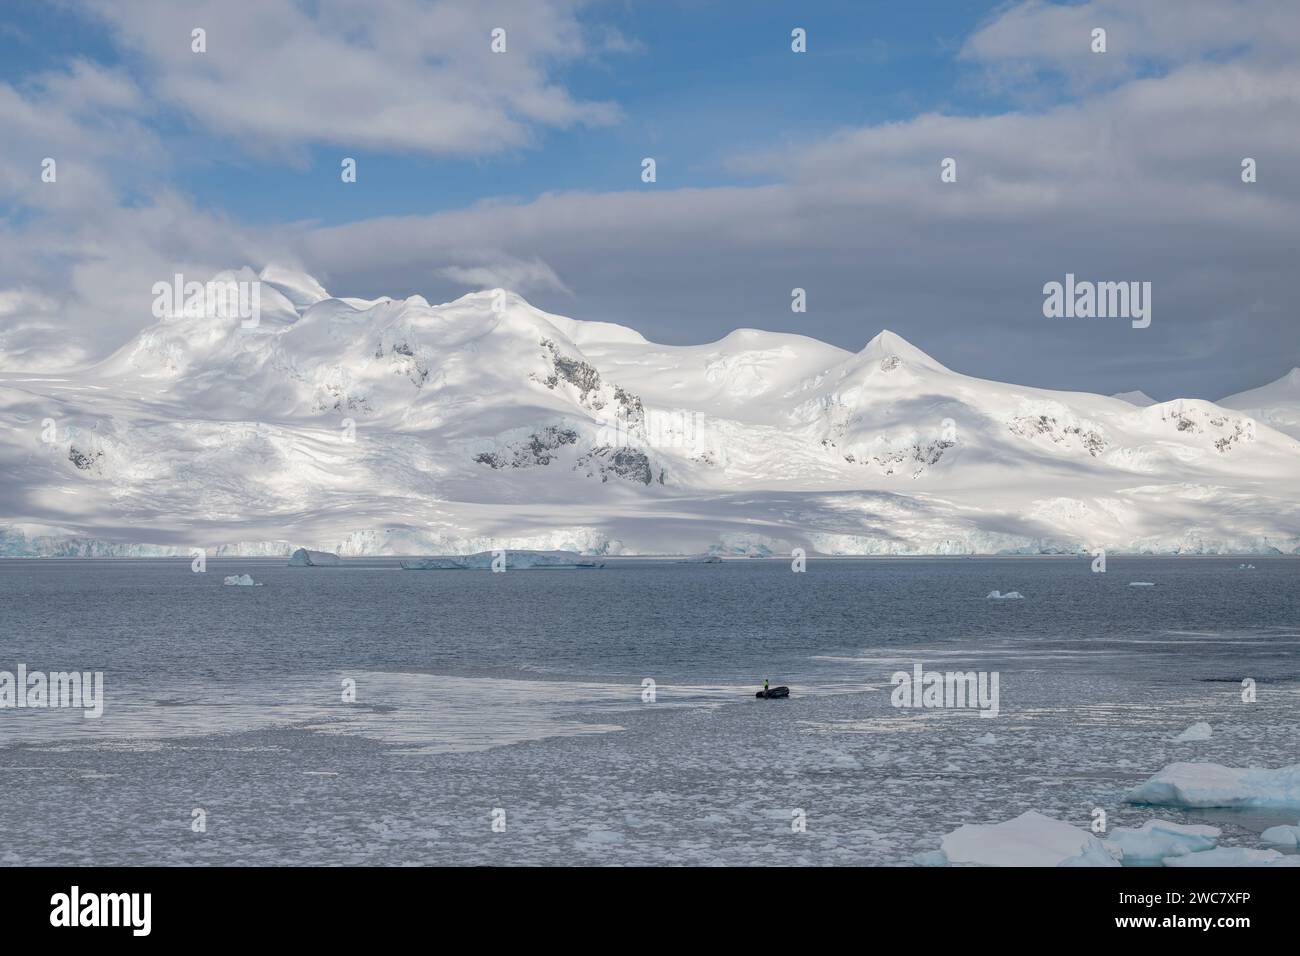 Zodiac navigiert durch das eisgefüllte Wasser von Neko, Hafen, Antarktis, aus nächster Nähe auf geerdete Eisberge, die sich auf dem umliegenden Wasser spiegeln Stockfoto